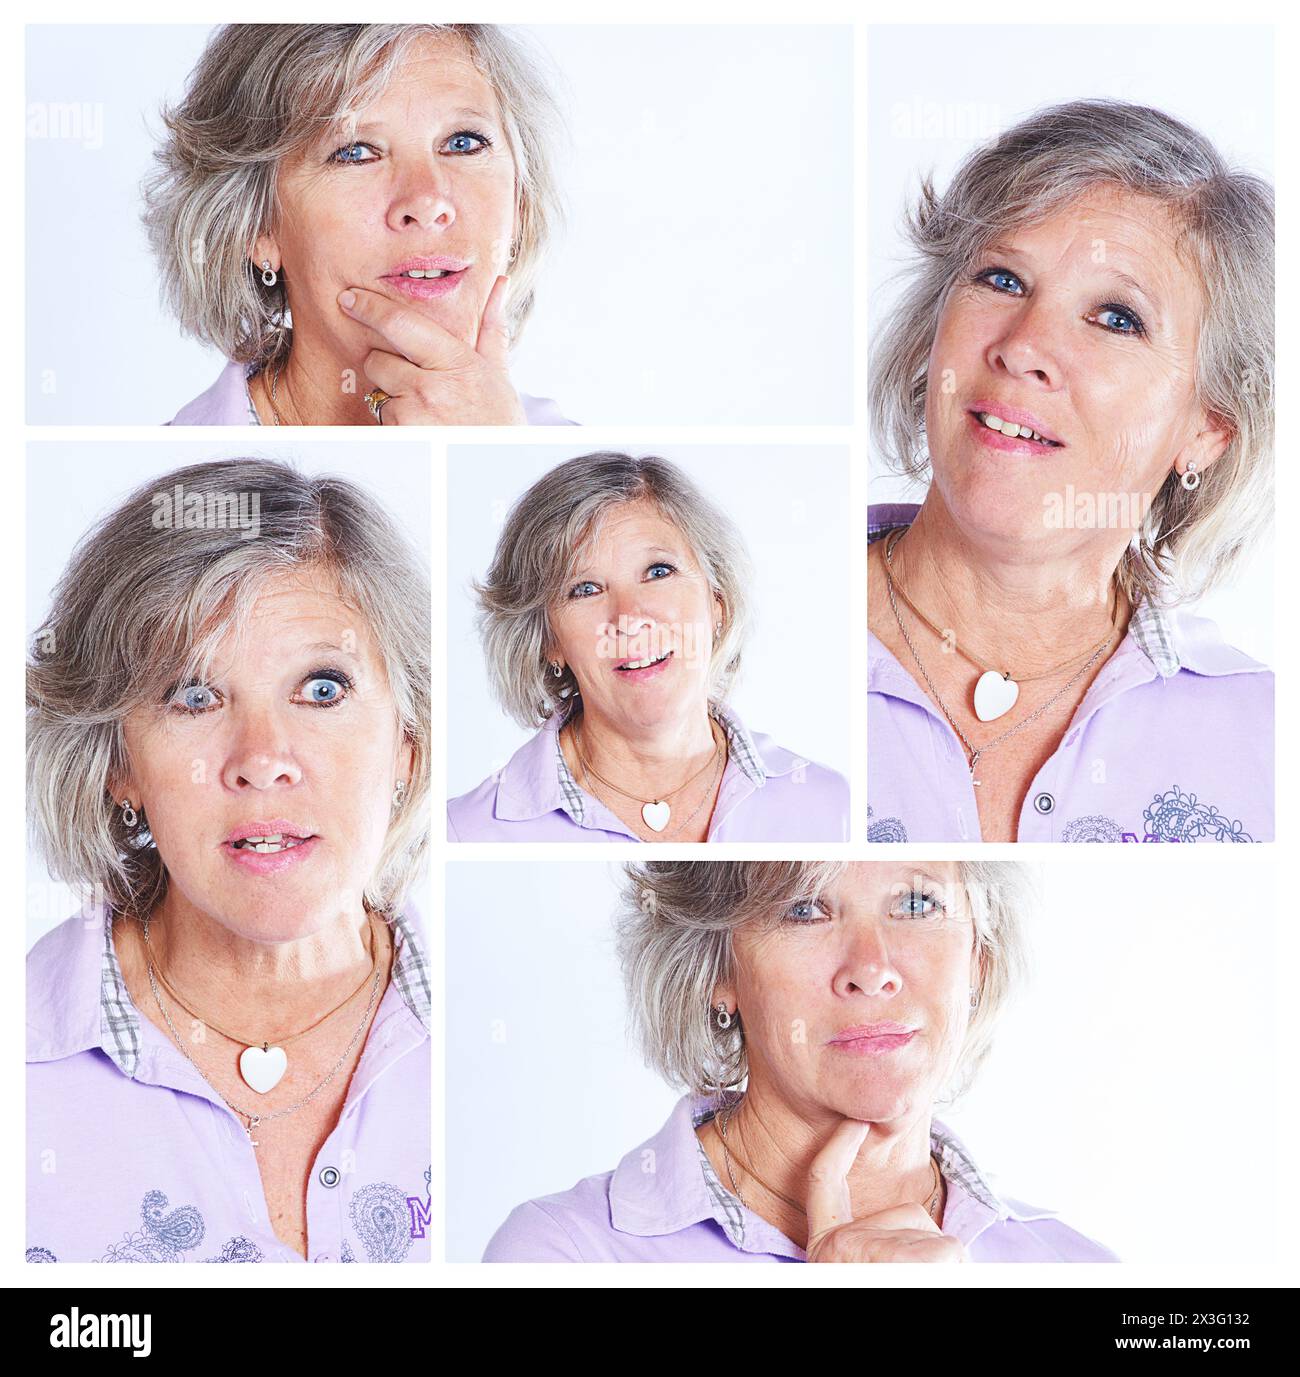 Femme senior, portrait et collage avec des expressions pour la comédie, l'humour ou la personnalité dans le montage. Femme âgée aux visages idiots en collection Banque D'Images